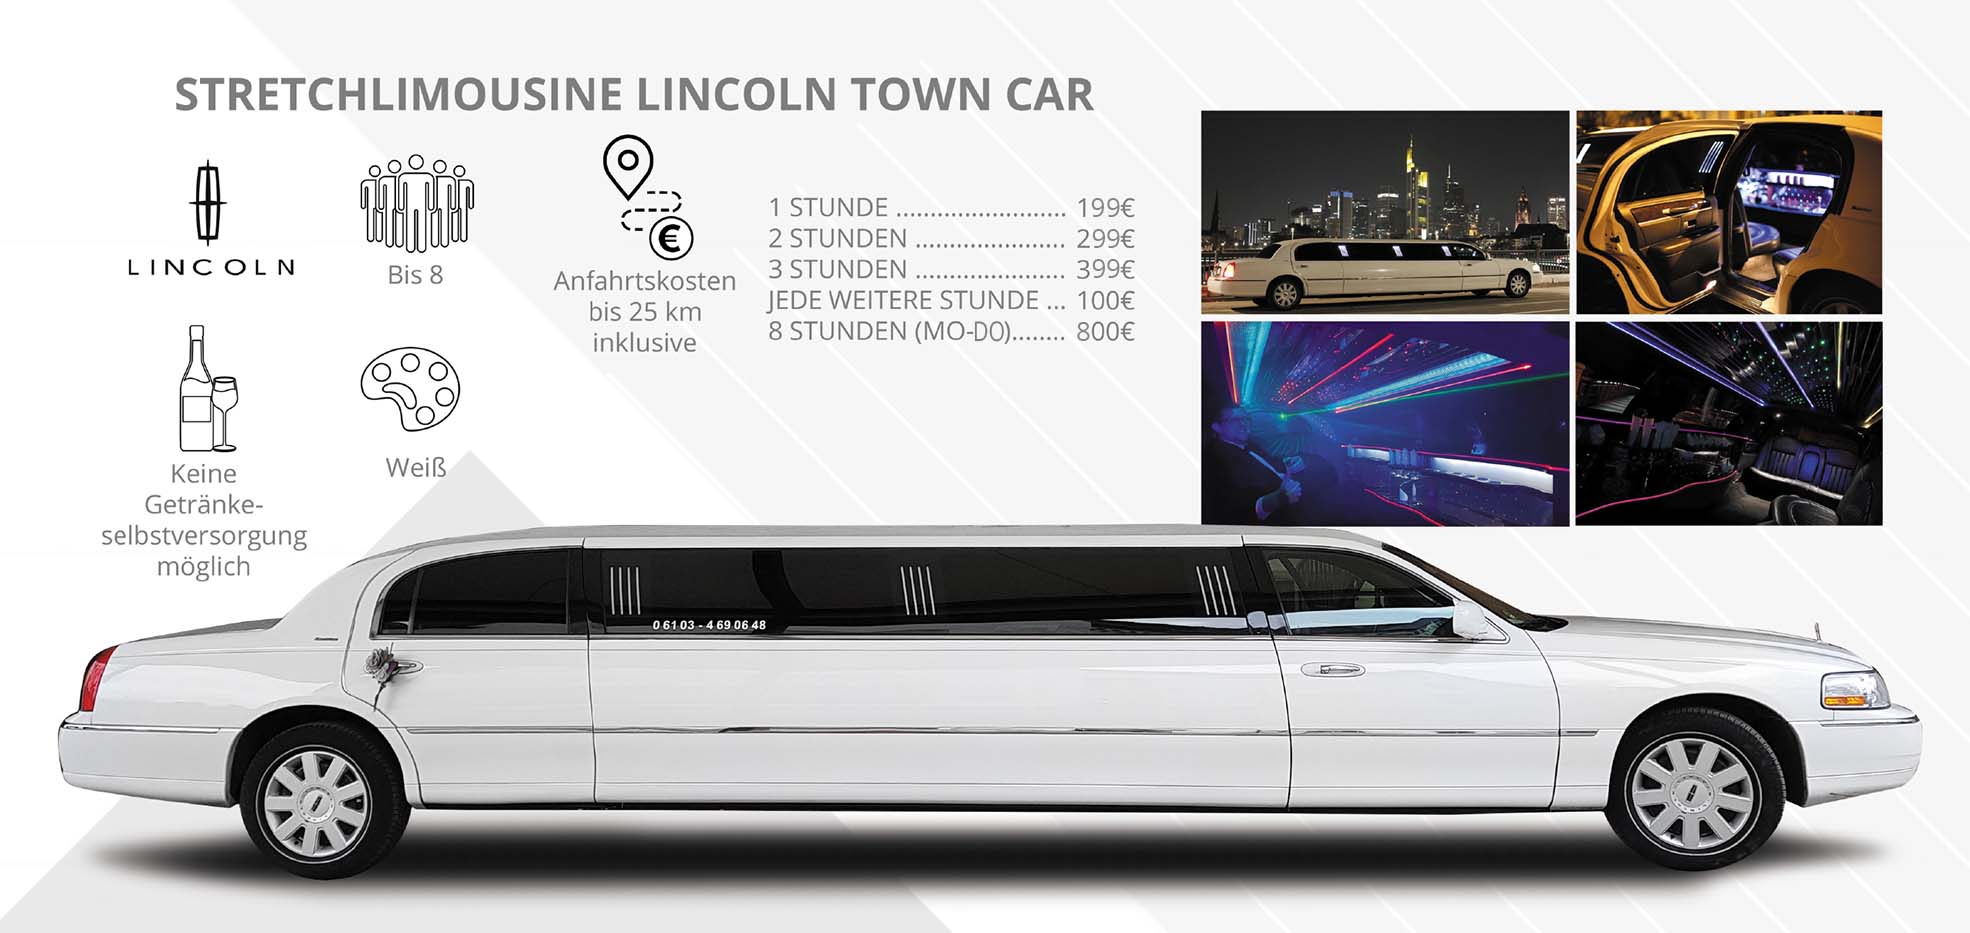 Eine weiße Lincoln Town Car Stretchlimousine mit angezeigten Informationen und Preisen